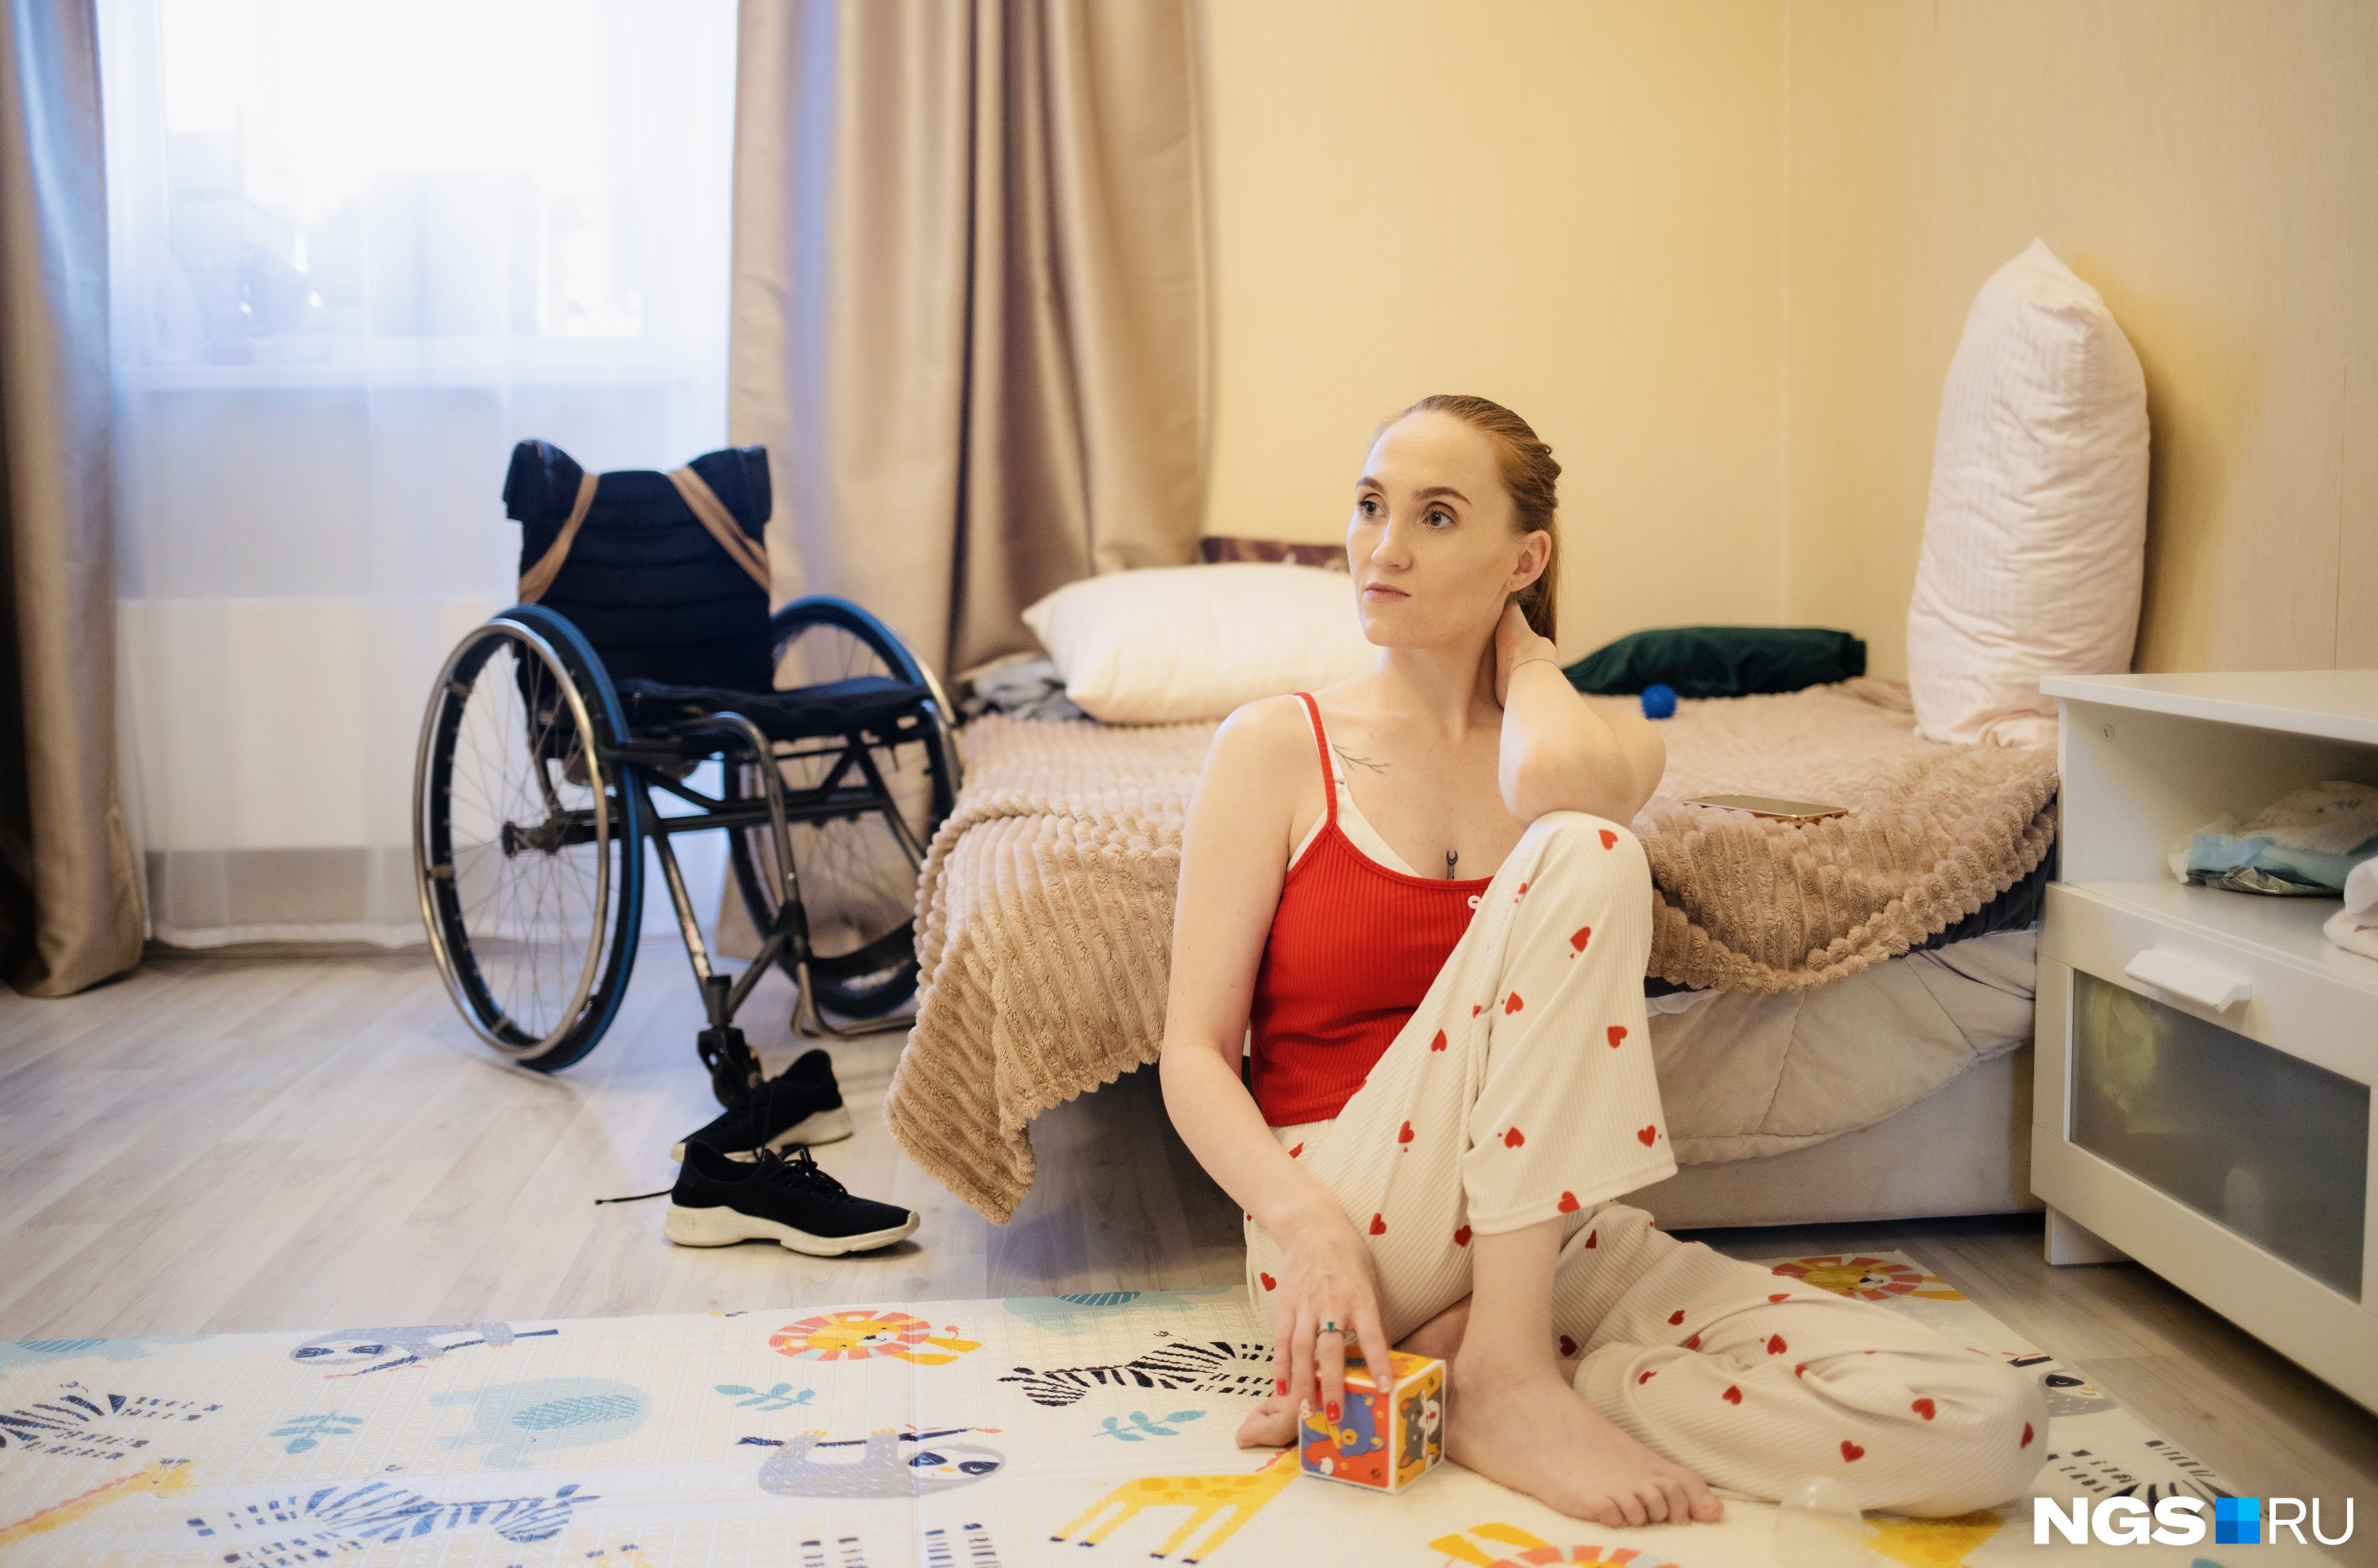 «Спрашивали, как я буду справляться»: история красотки на коляске — у нее дочь, танцы и миллионы просмотров в блоге